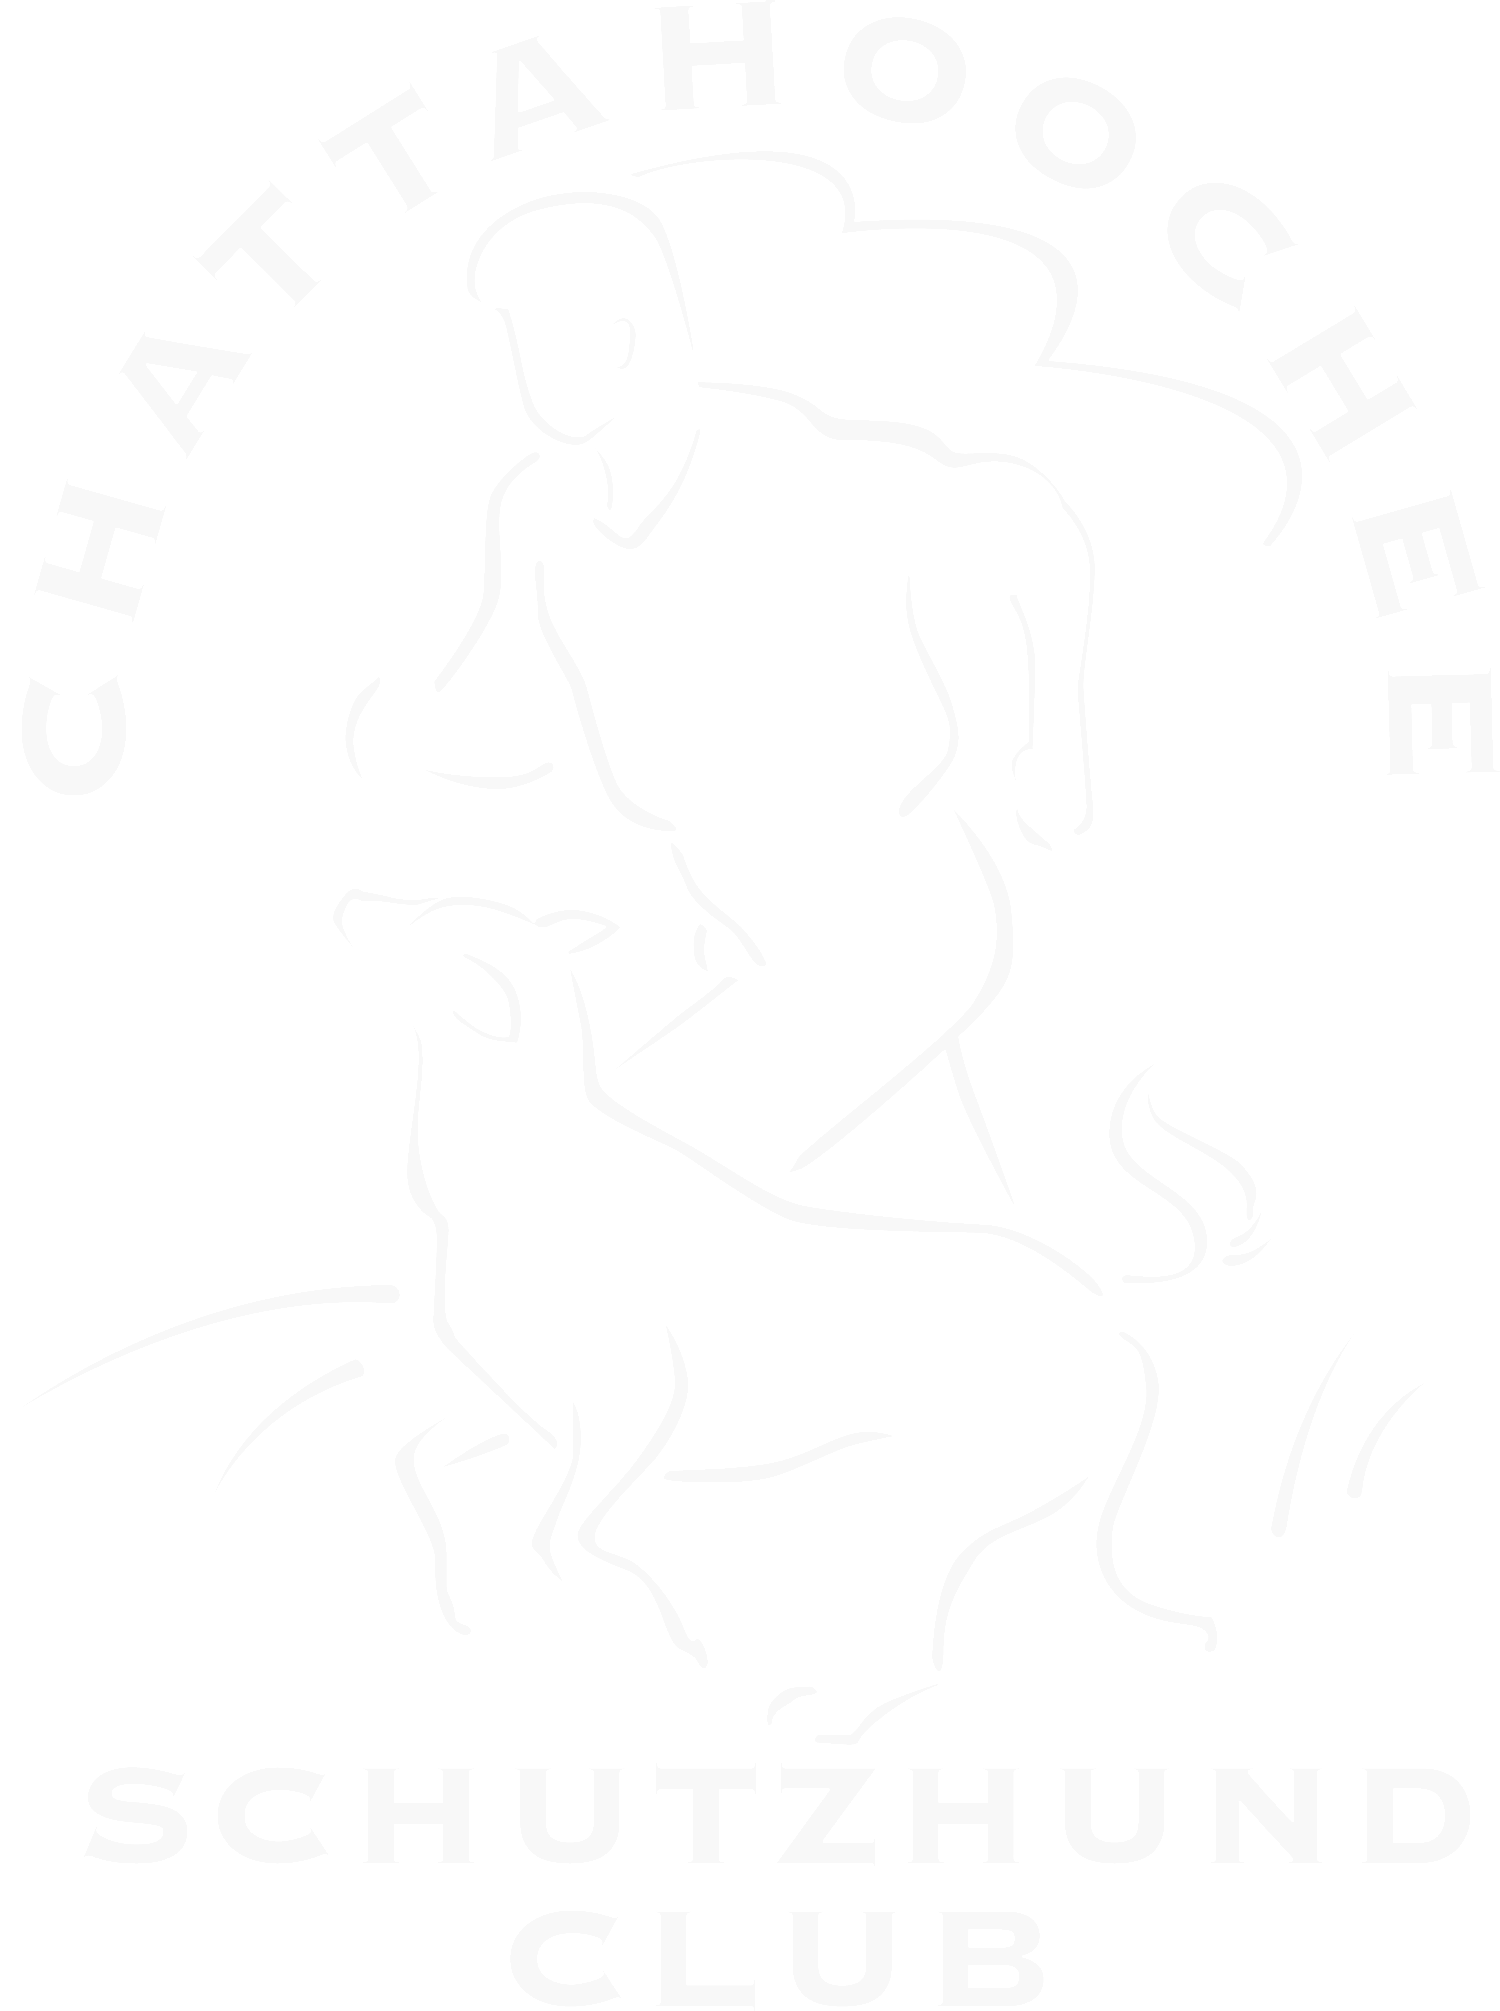 Chattahoochee Schutzhund Club